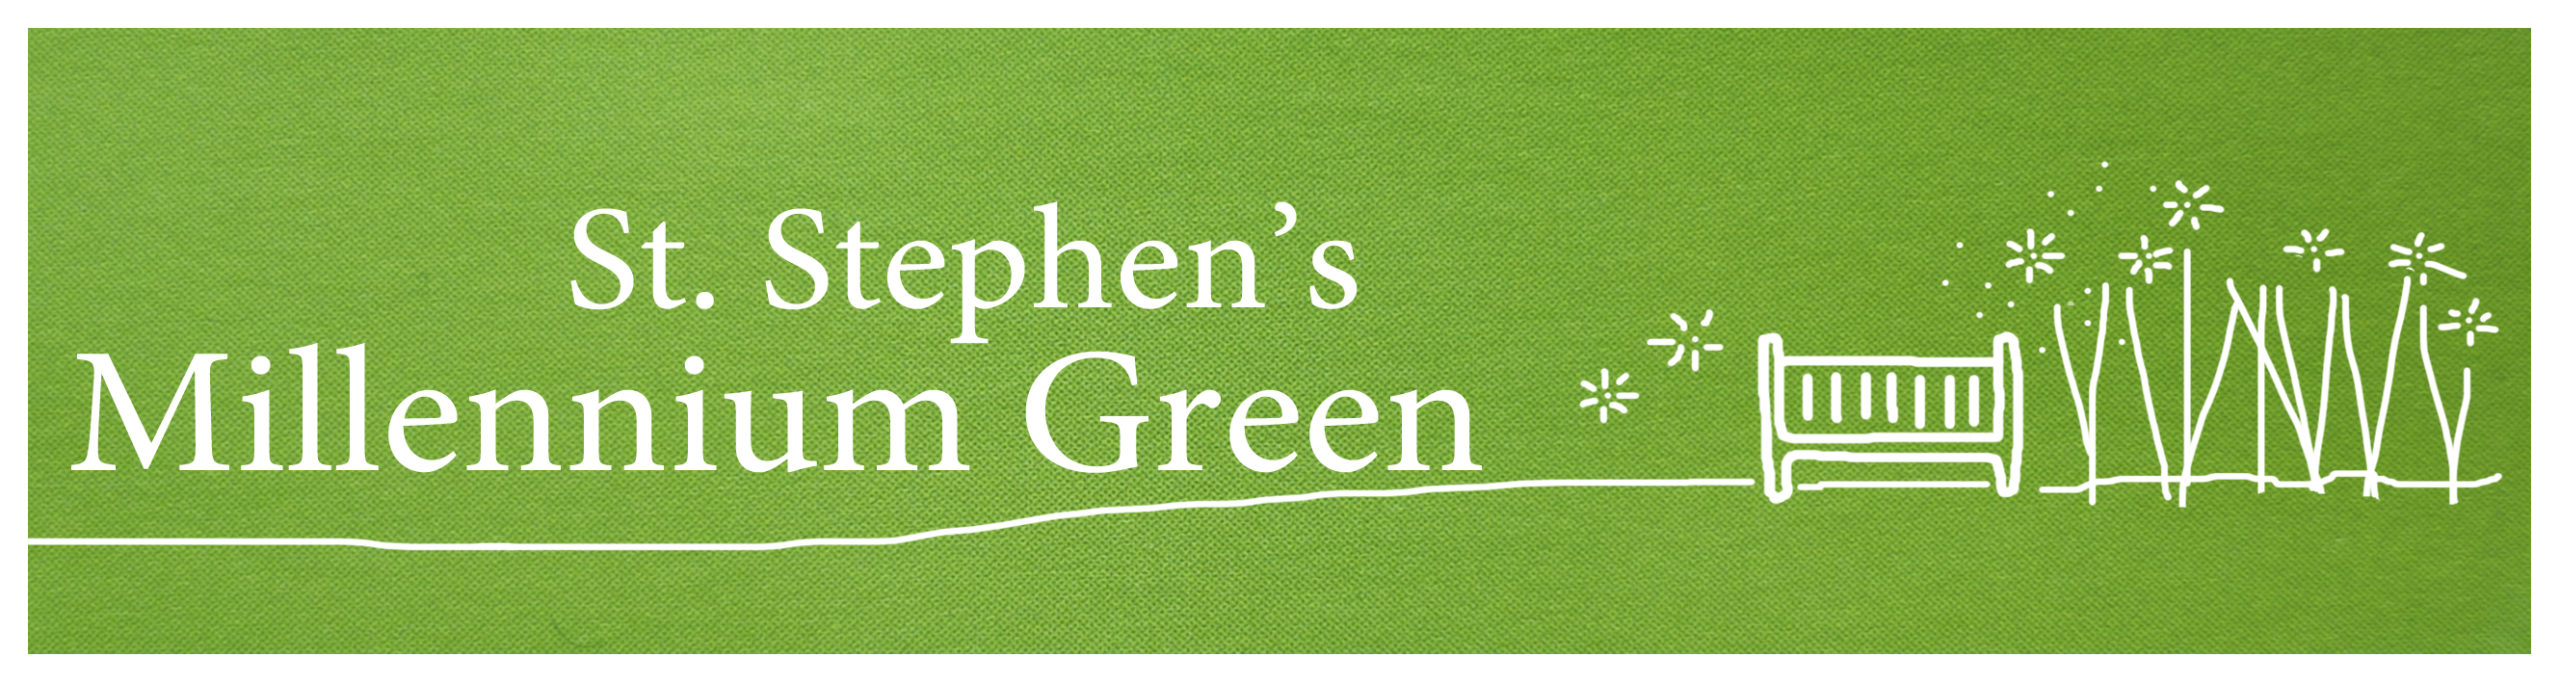 St. Stephen's Millennium Green